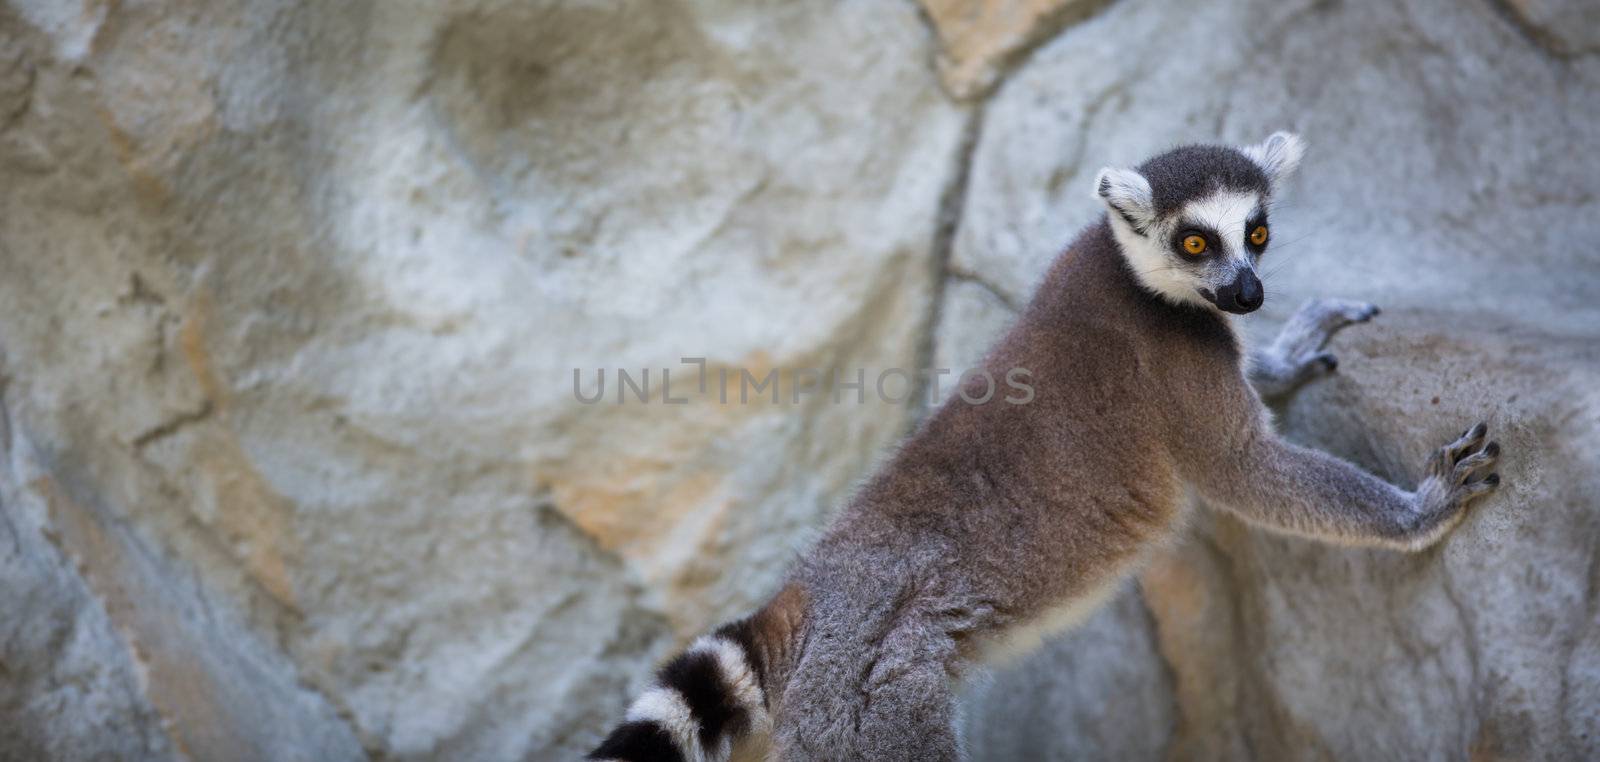 Lemur kata (Lemur catta)  by viktor_cap